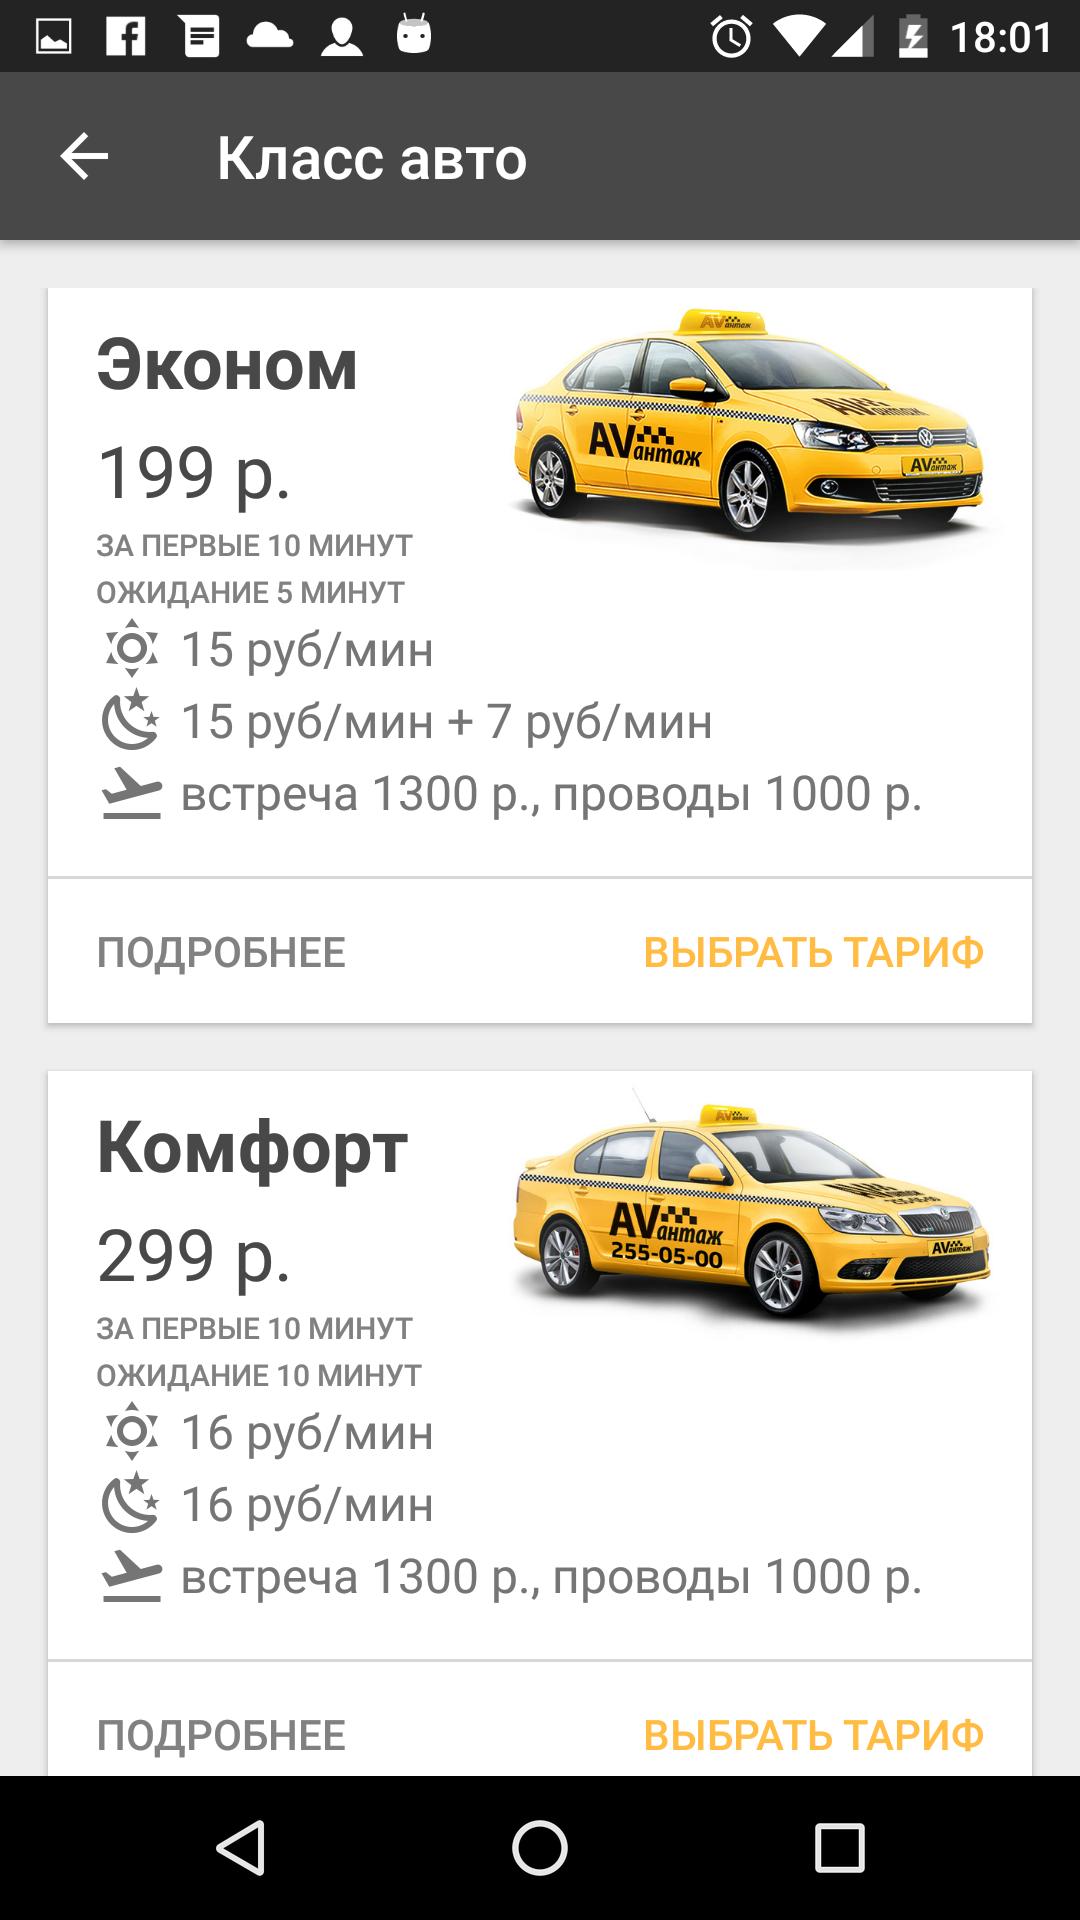 Машины для такси какие года подходят. Классы такси. Эконом такси машины. Классы автомобилей такси.